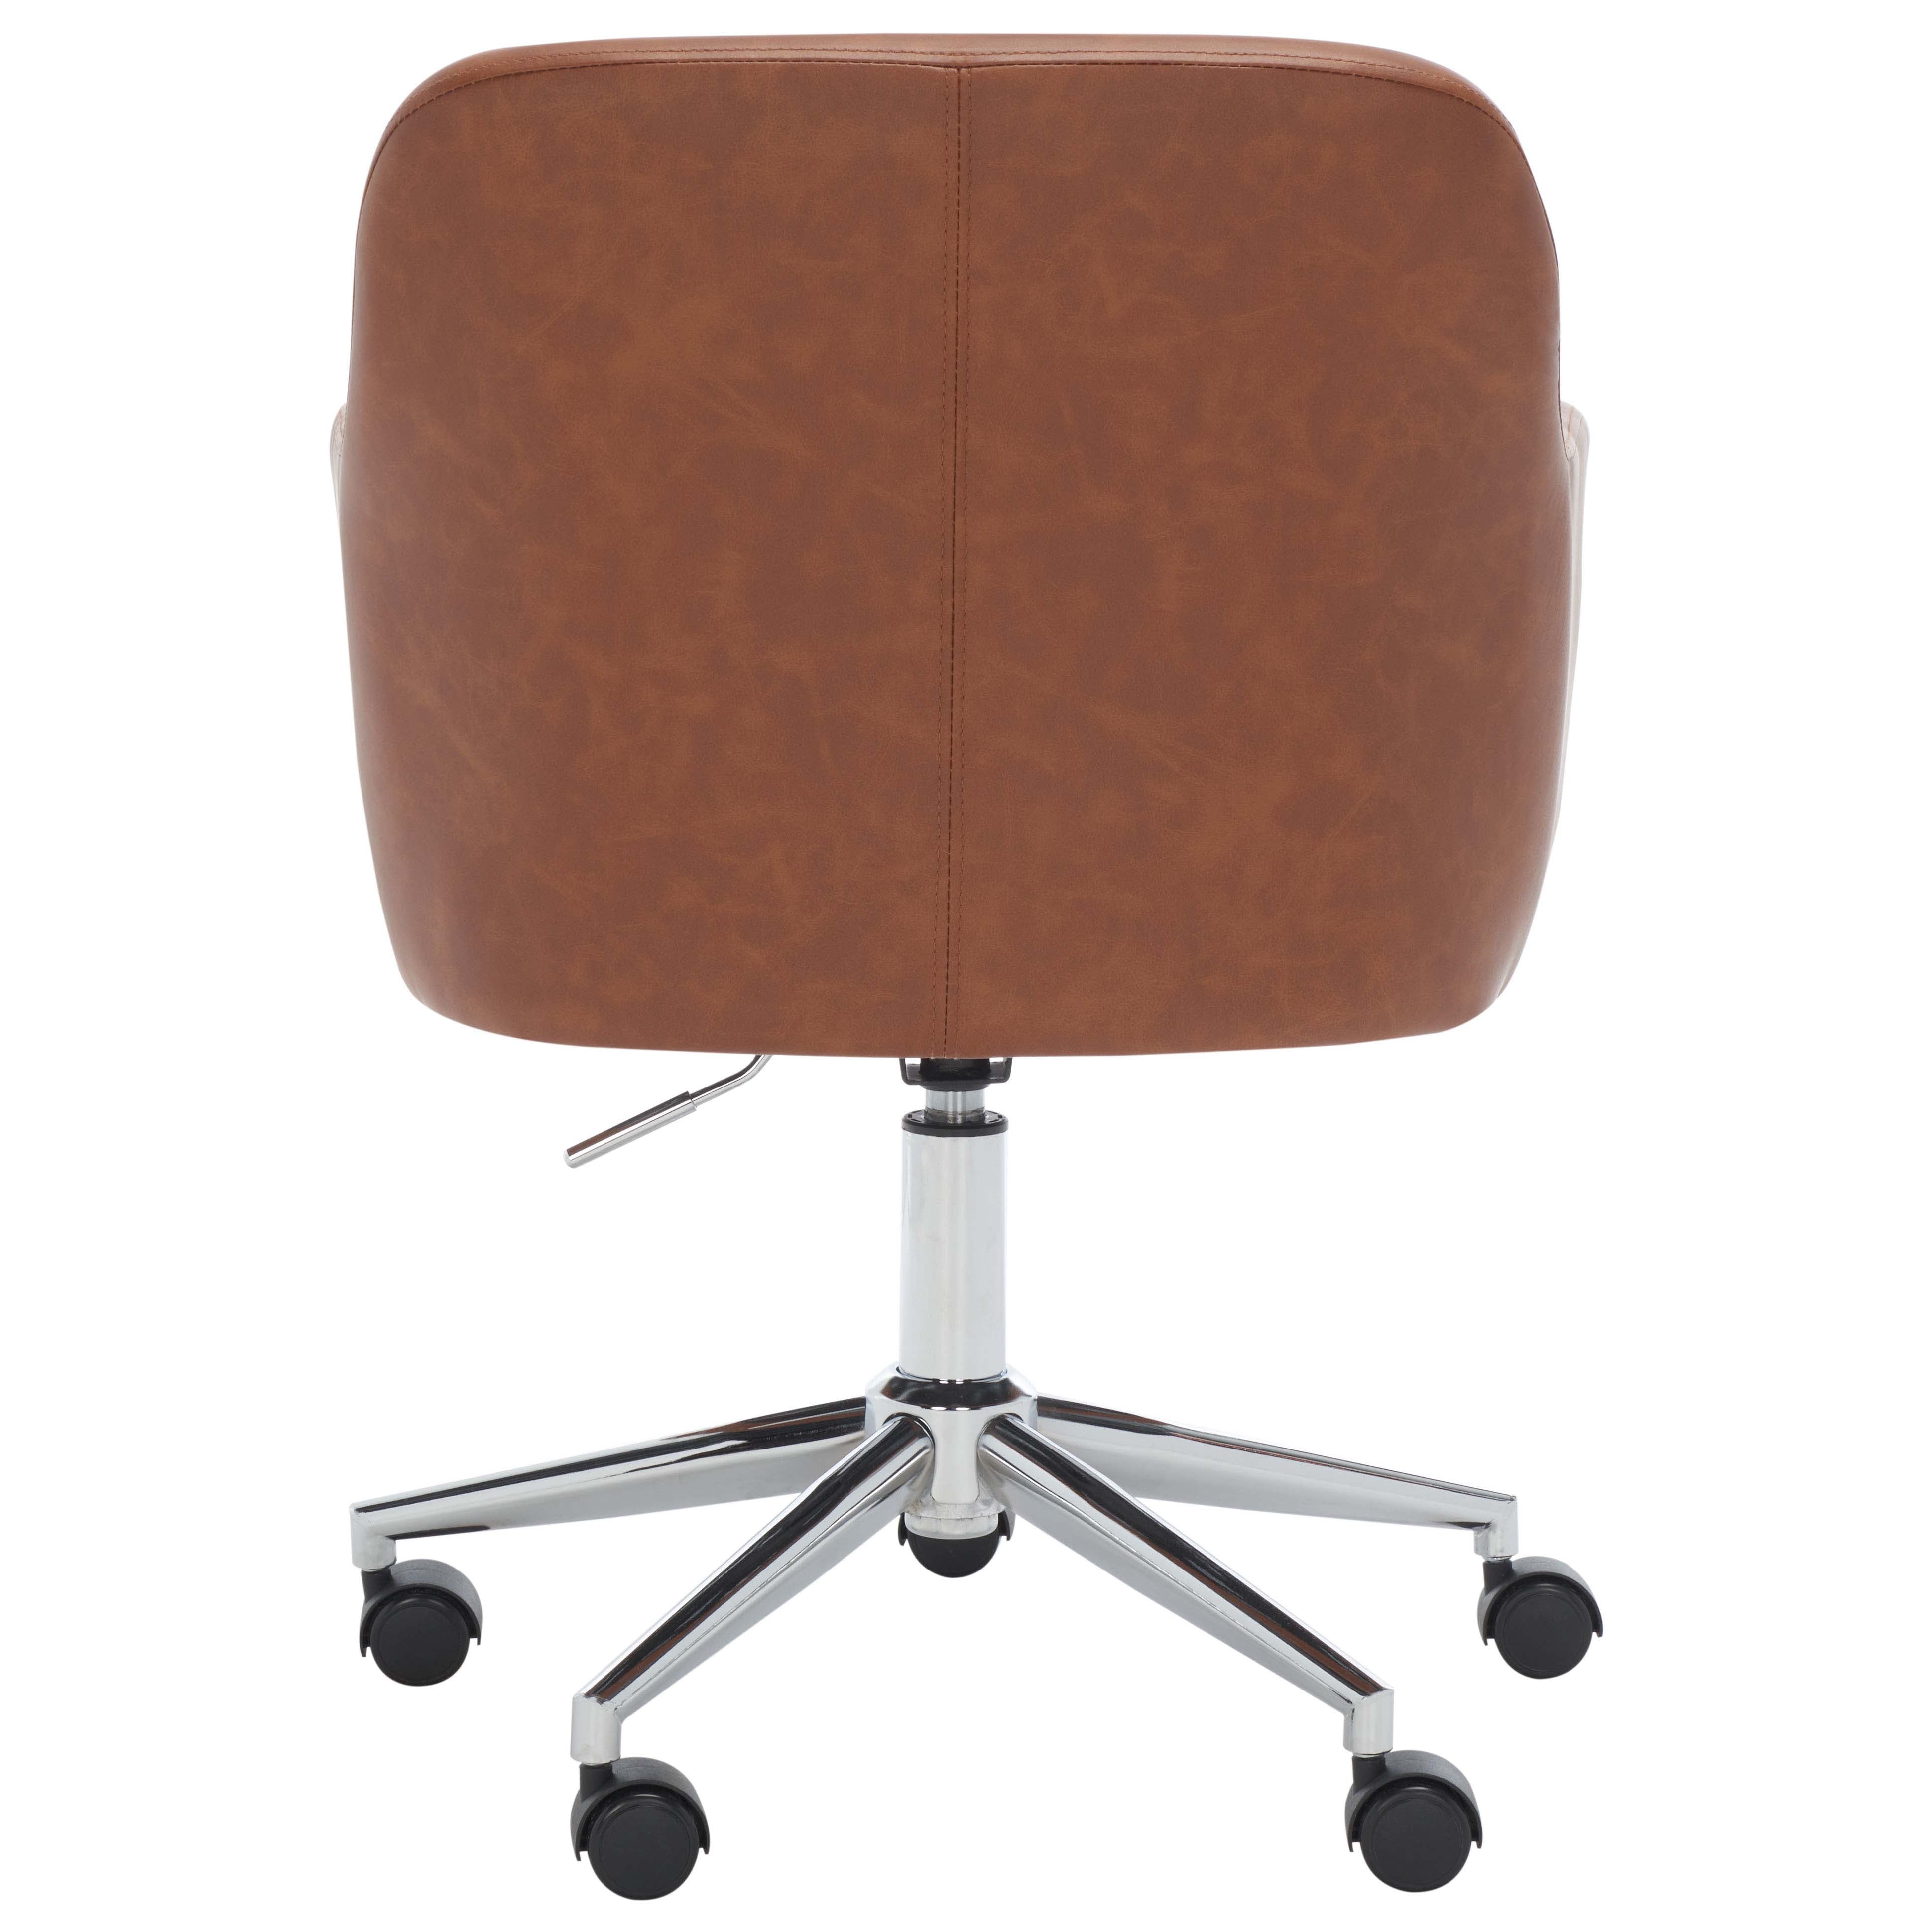 Safavieh Kains Swivel Office Chair , OCH2000 - Cognac / Chrome